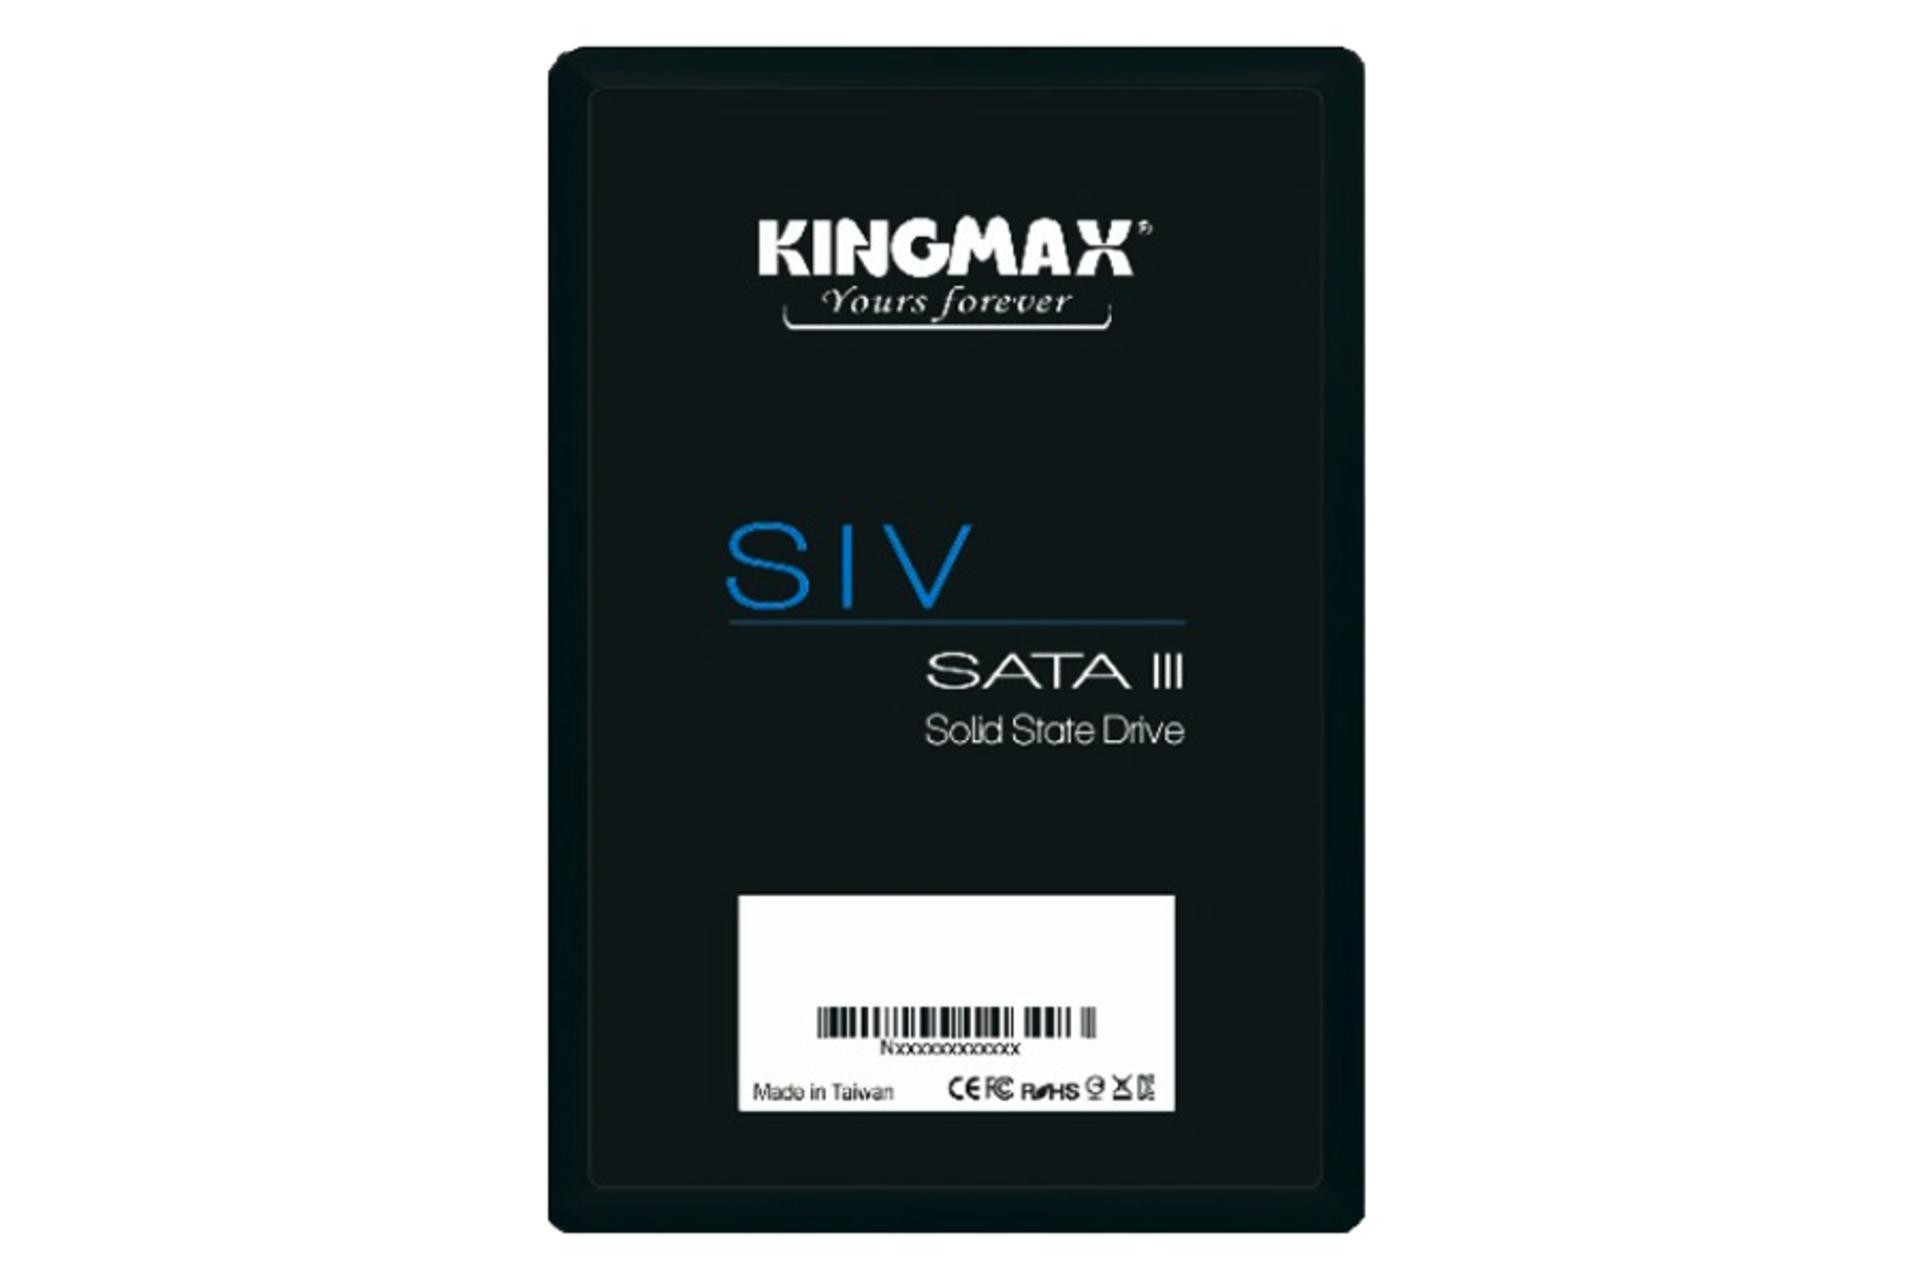 ابعاد SSD کینگ مکس SIV SATA 2.5 Inch ظرفیت 128 گیگابایت